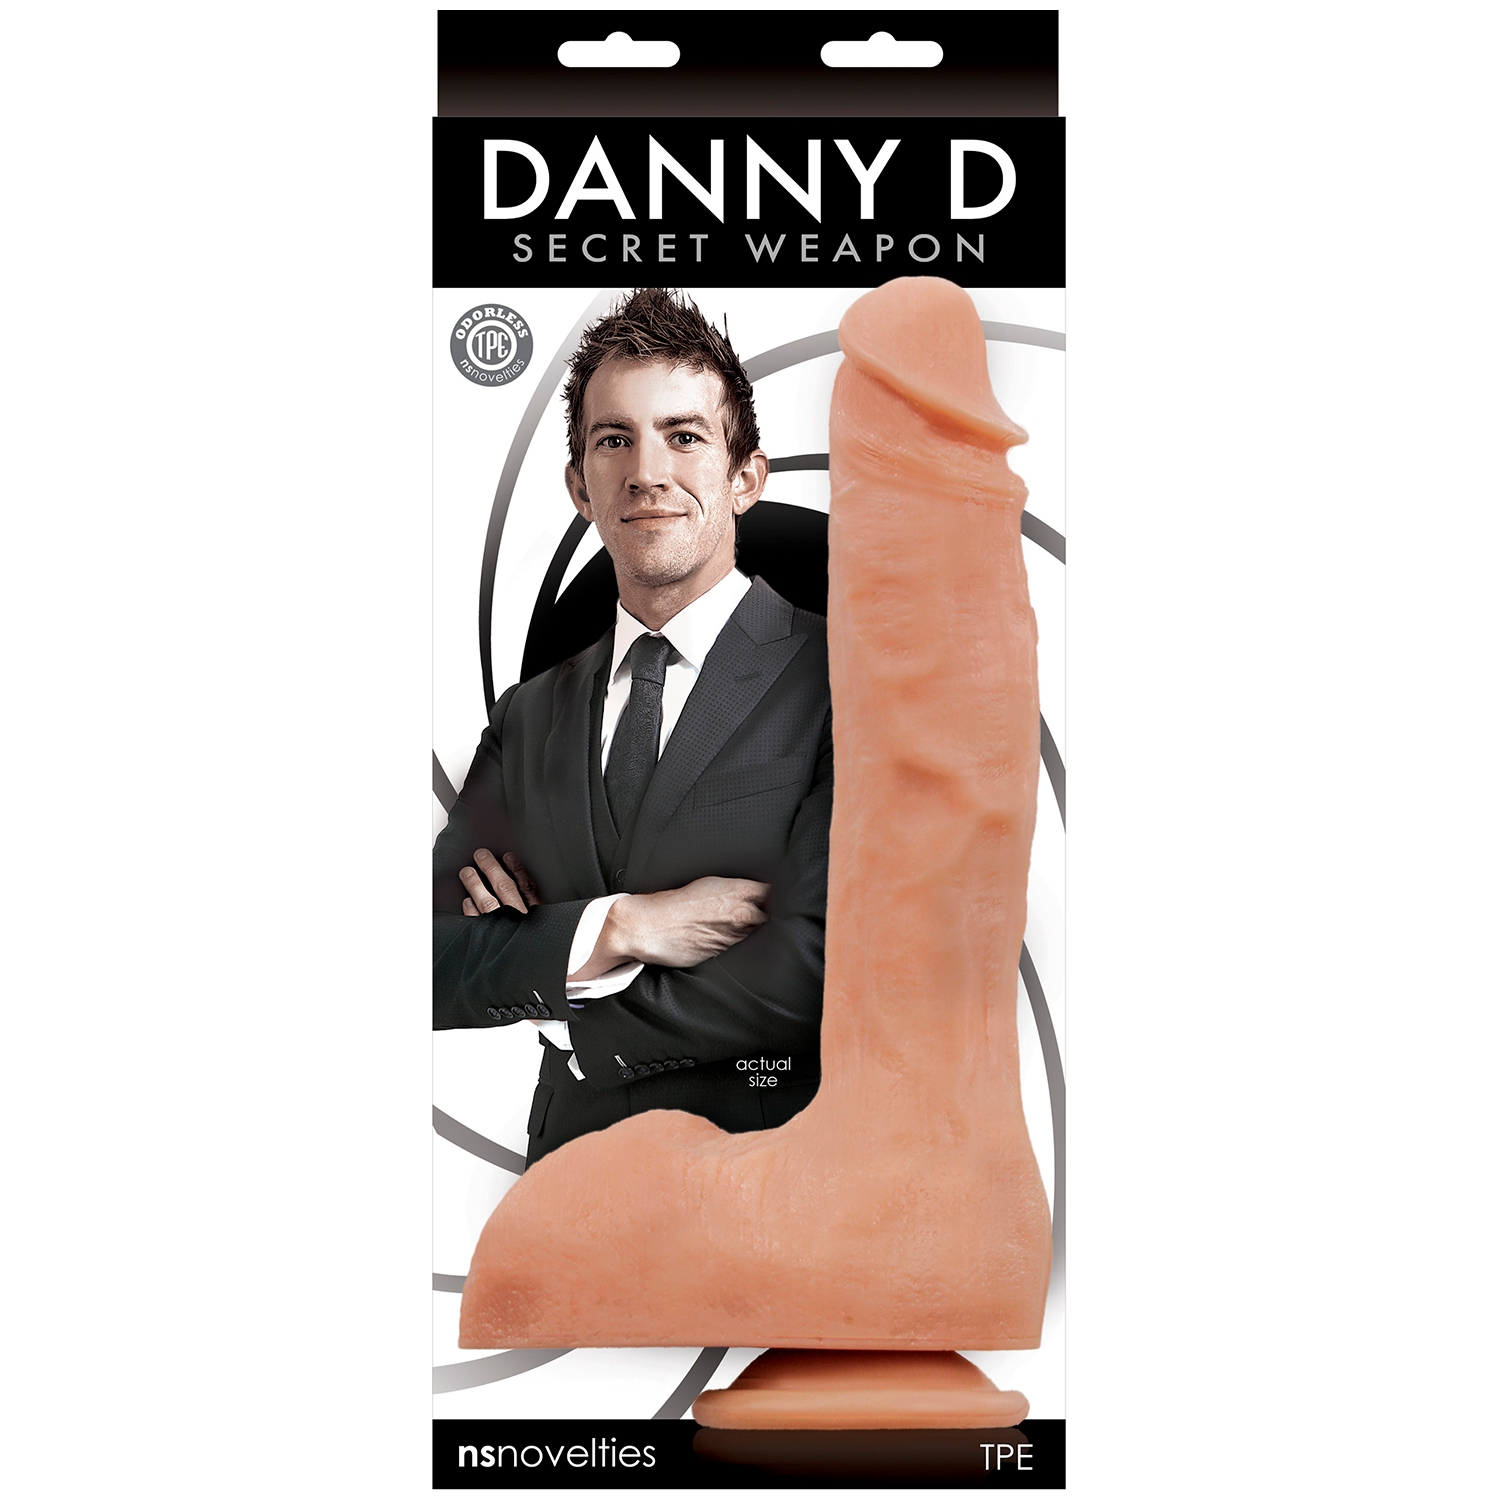 how big is danny d penis